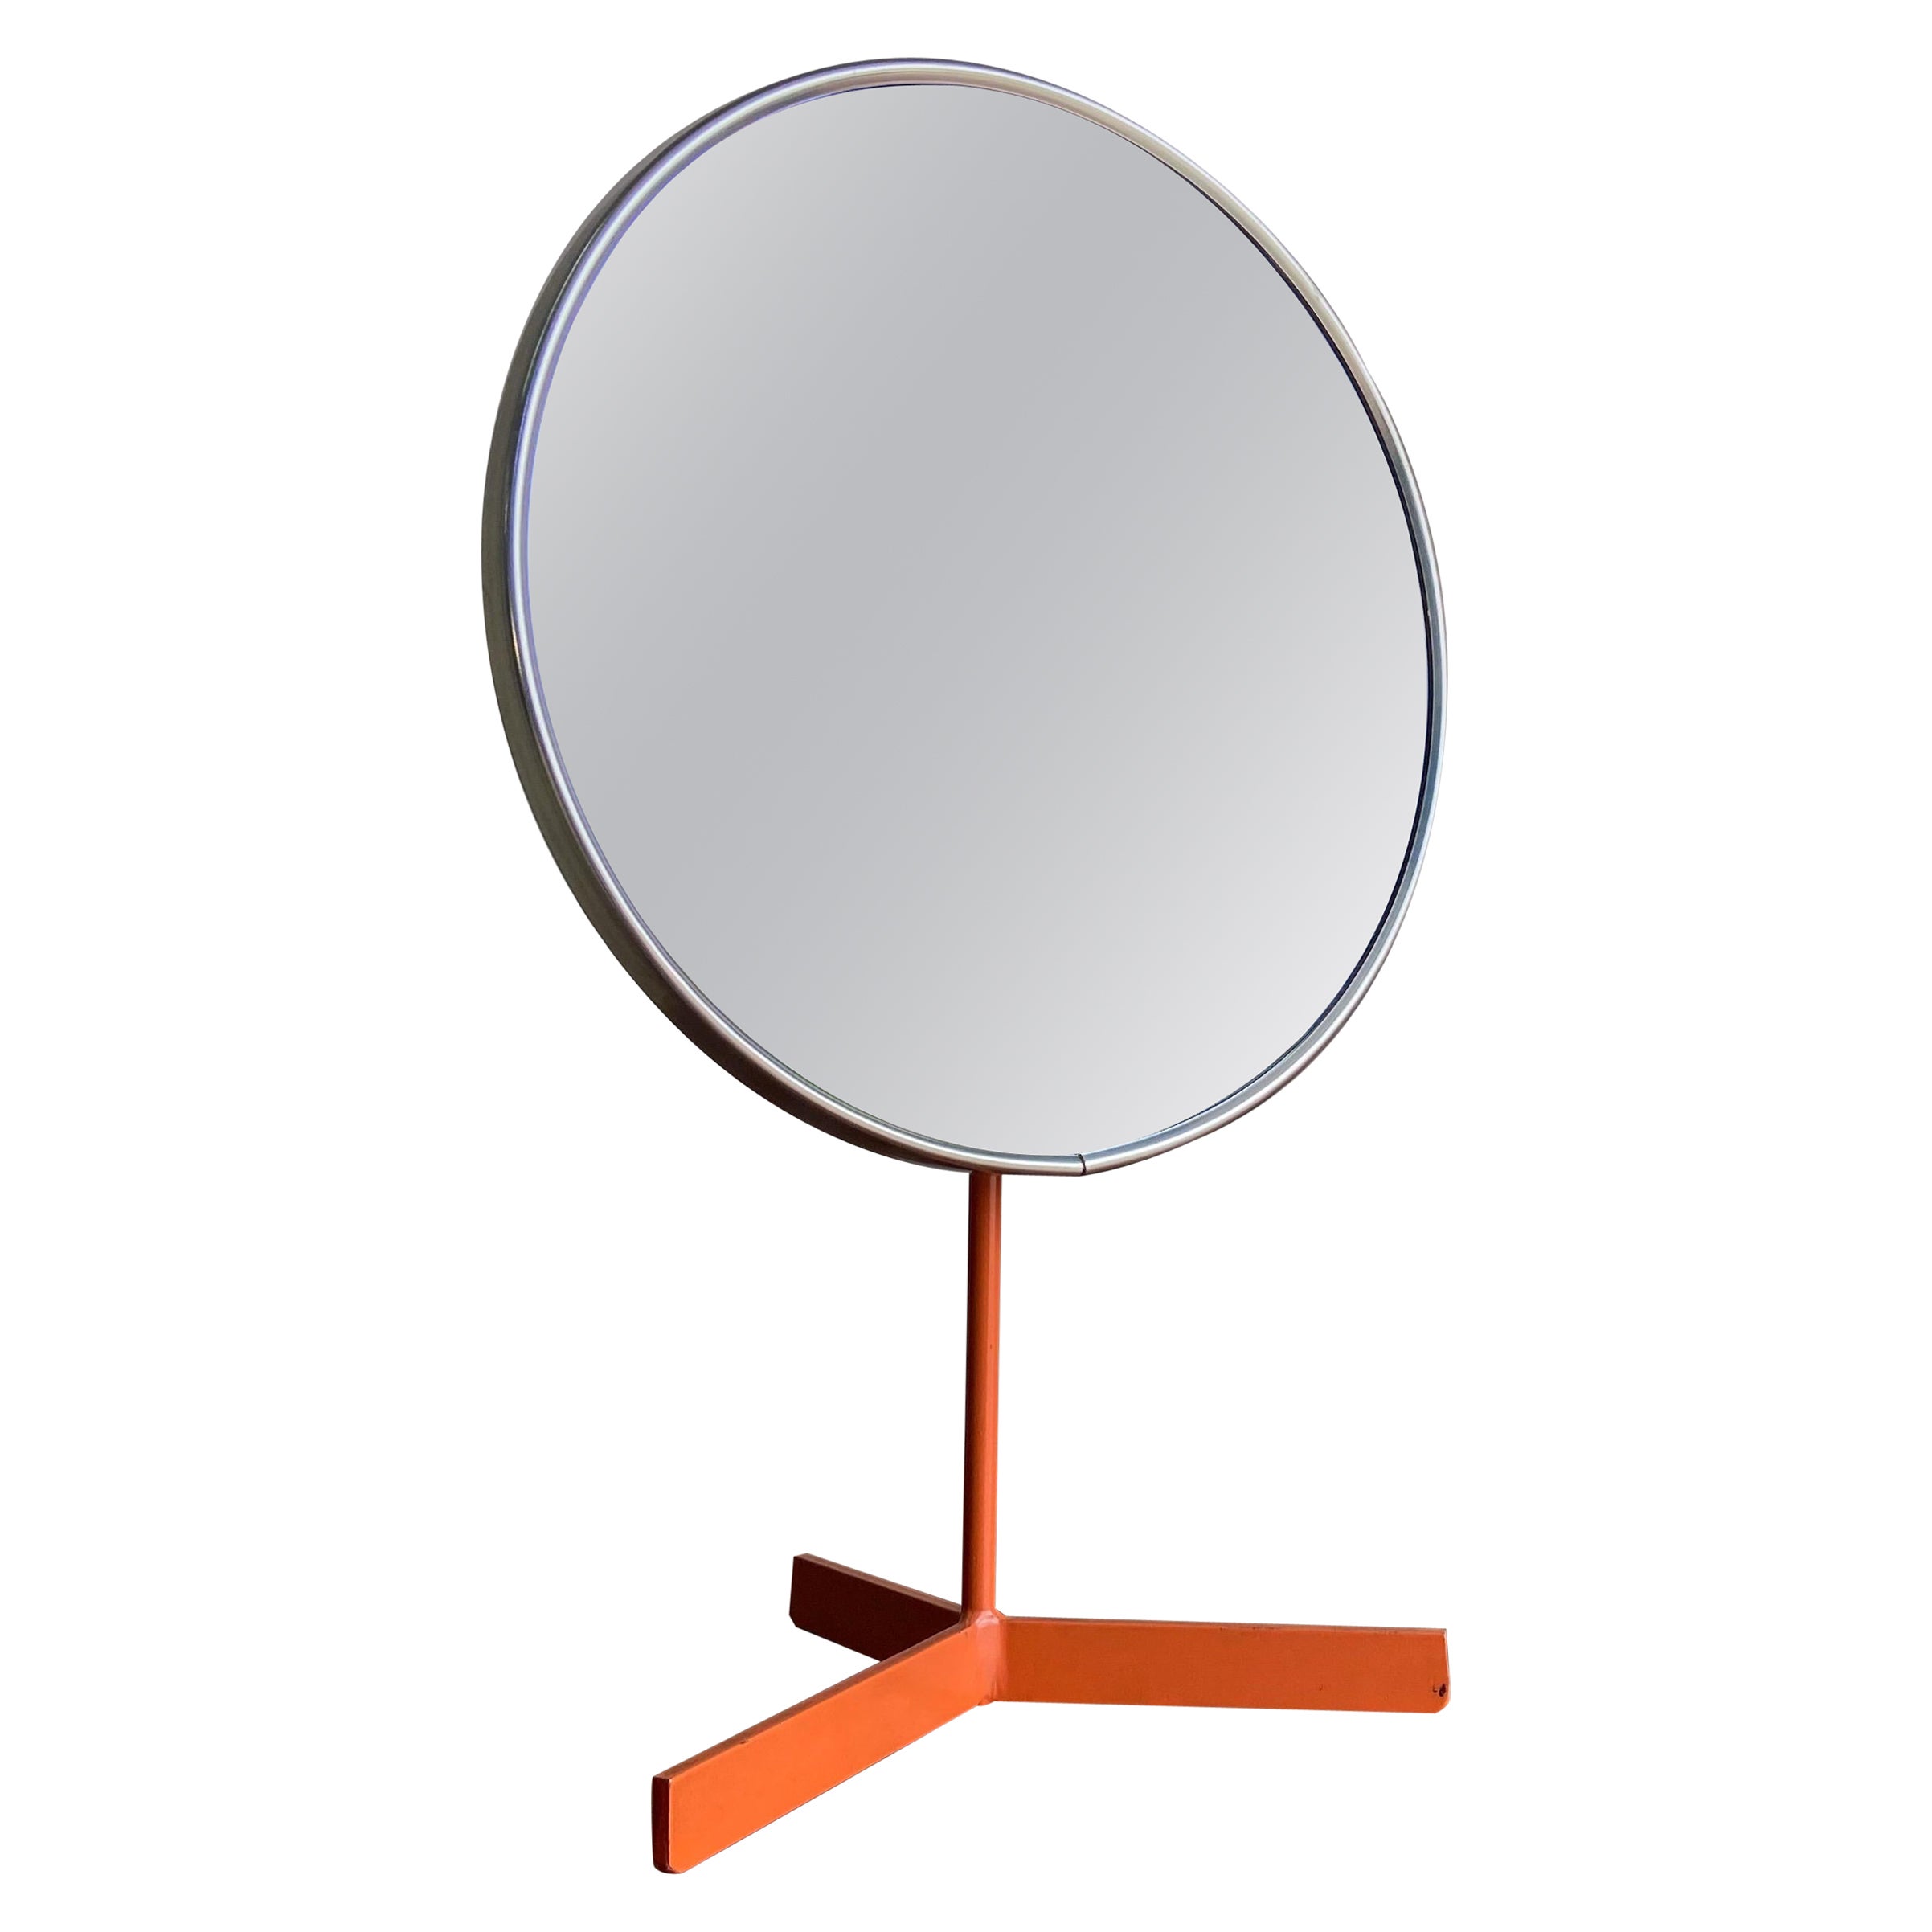 Mid-Century Modern Minimalist Vanity Mirror by Durlston Designs Ltd England